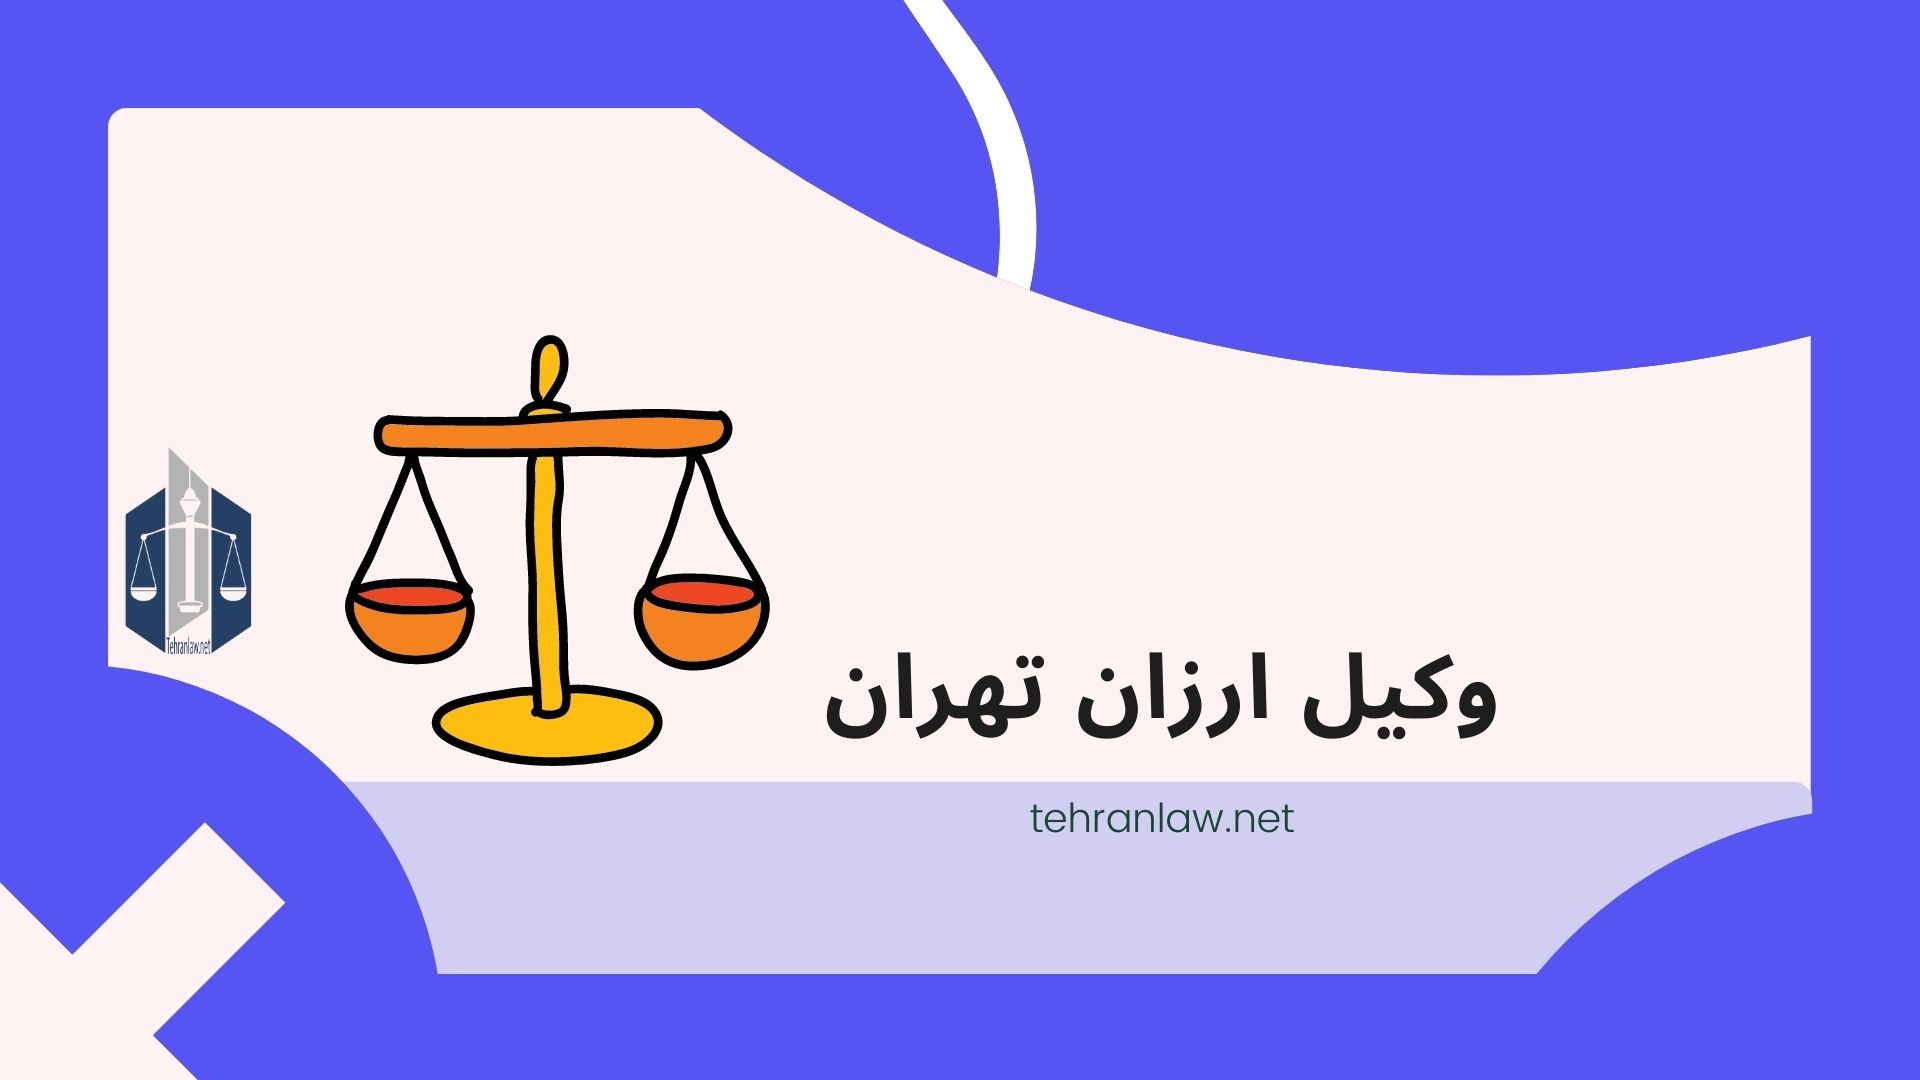 وکیل ارزان تهران